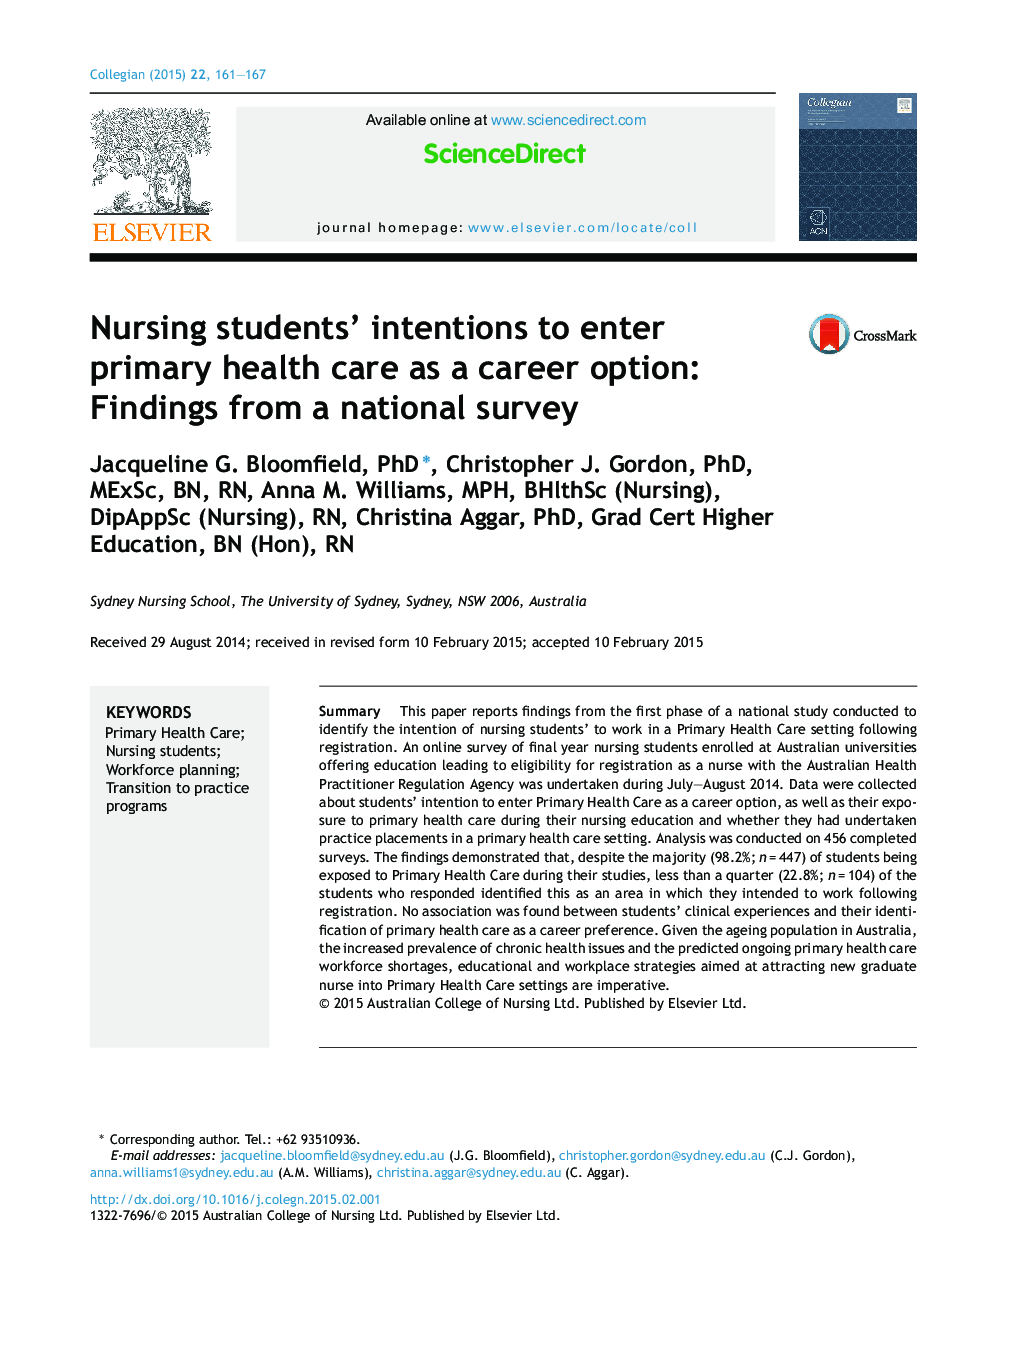 نیات دانشجویان پرستاری برای ورود به مراقبت های بهداشتی اولیه به عنوان یک گزینه حرفه ای: یافته هایی از یک نظرسنجی ملی